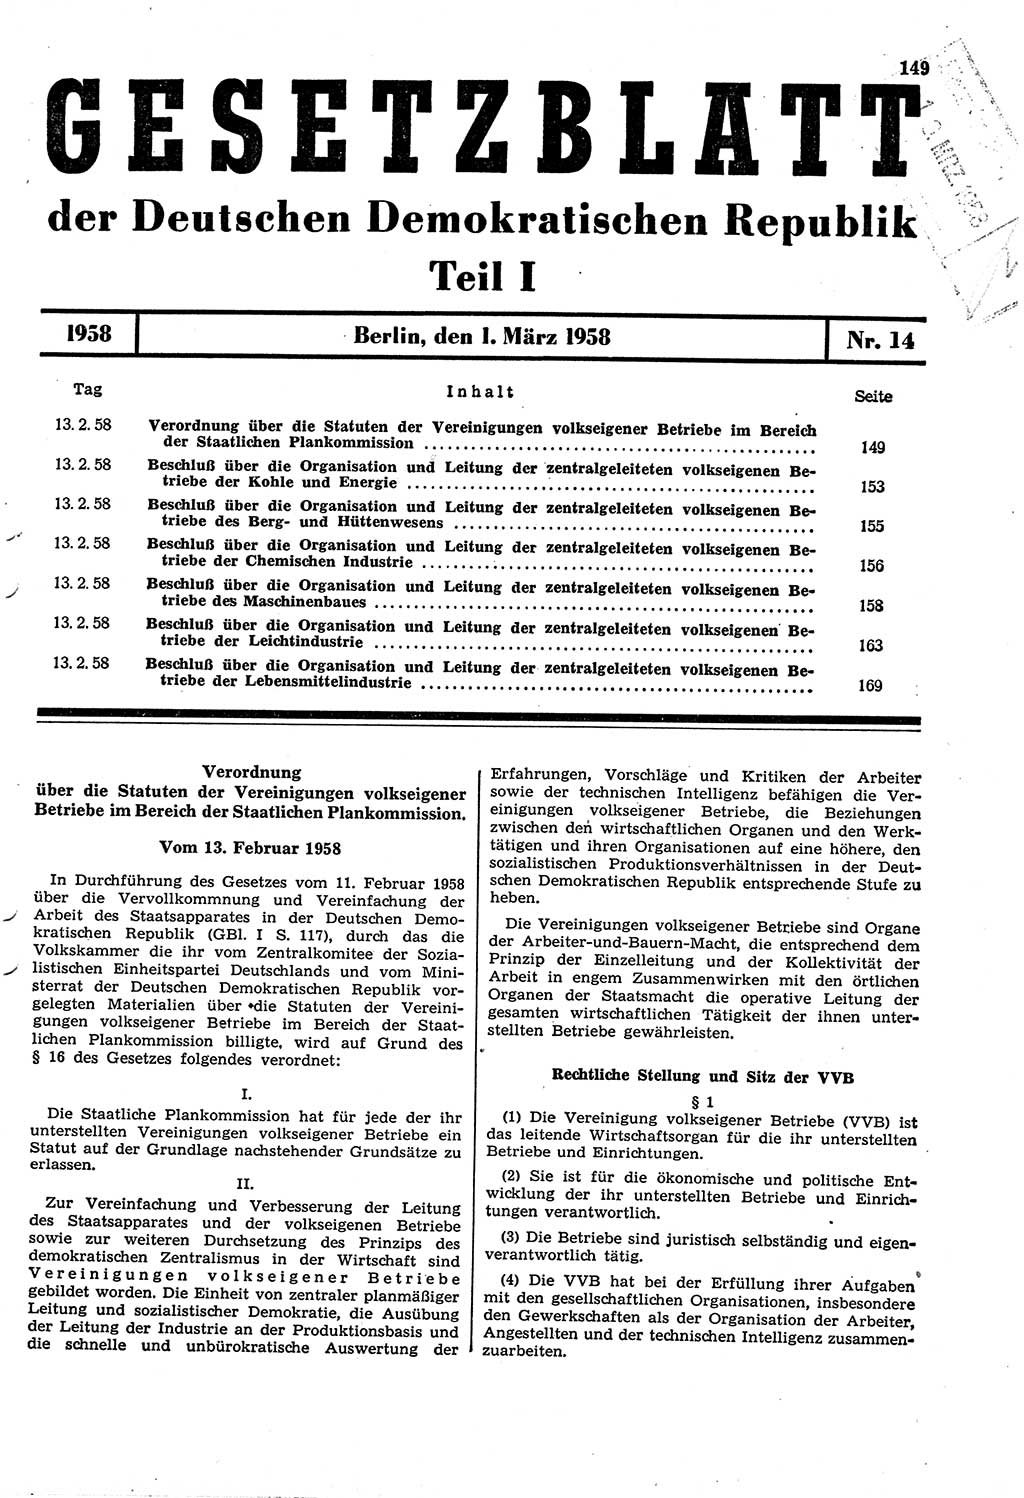 Gesetzblatt (GBl.) der Deutschen Demokratischen Republik (DDR) Teil Ⅰ 1958, Seite 149 (GBl. DDR Ⅰ 1958, S. 149)